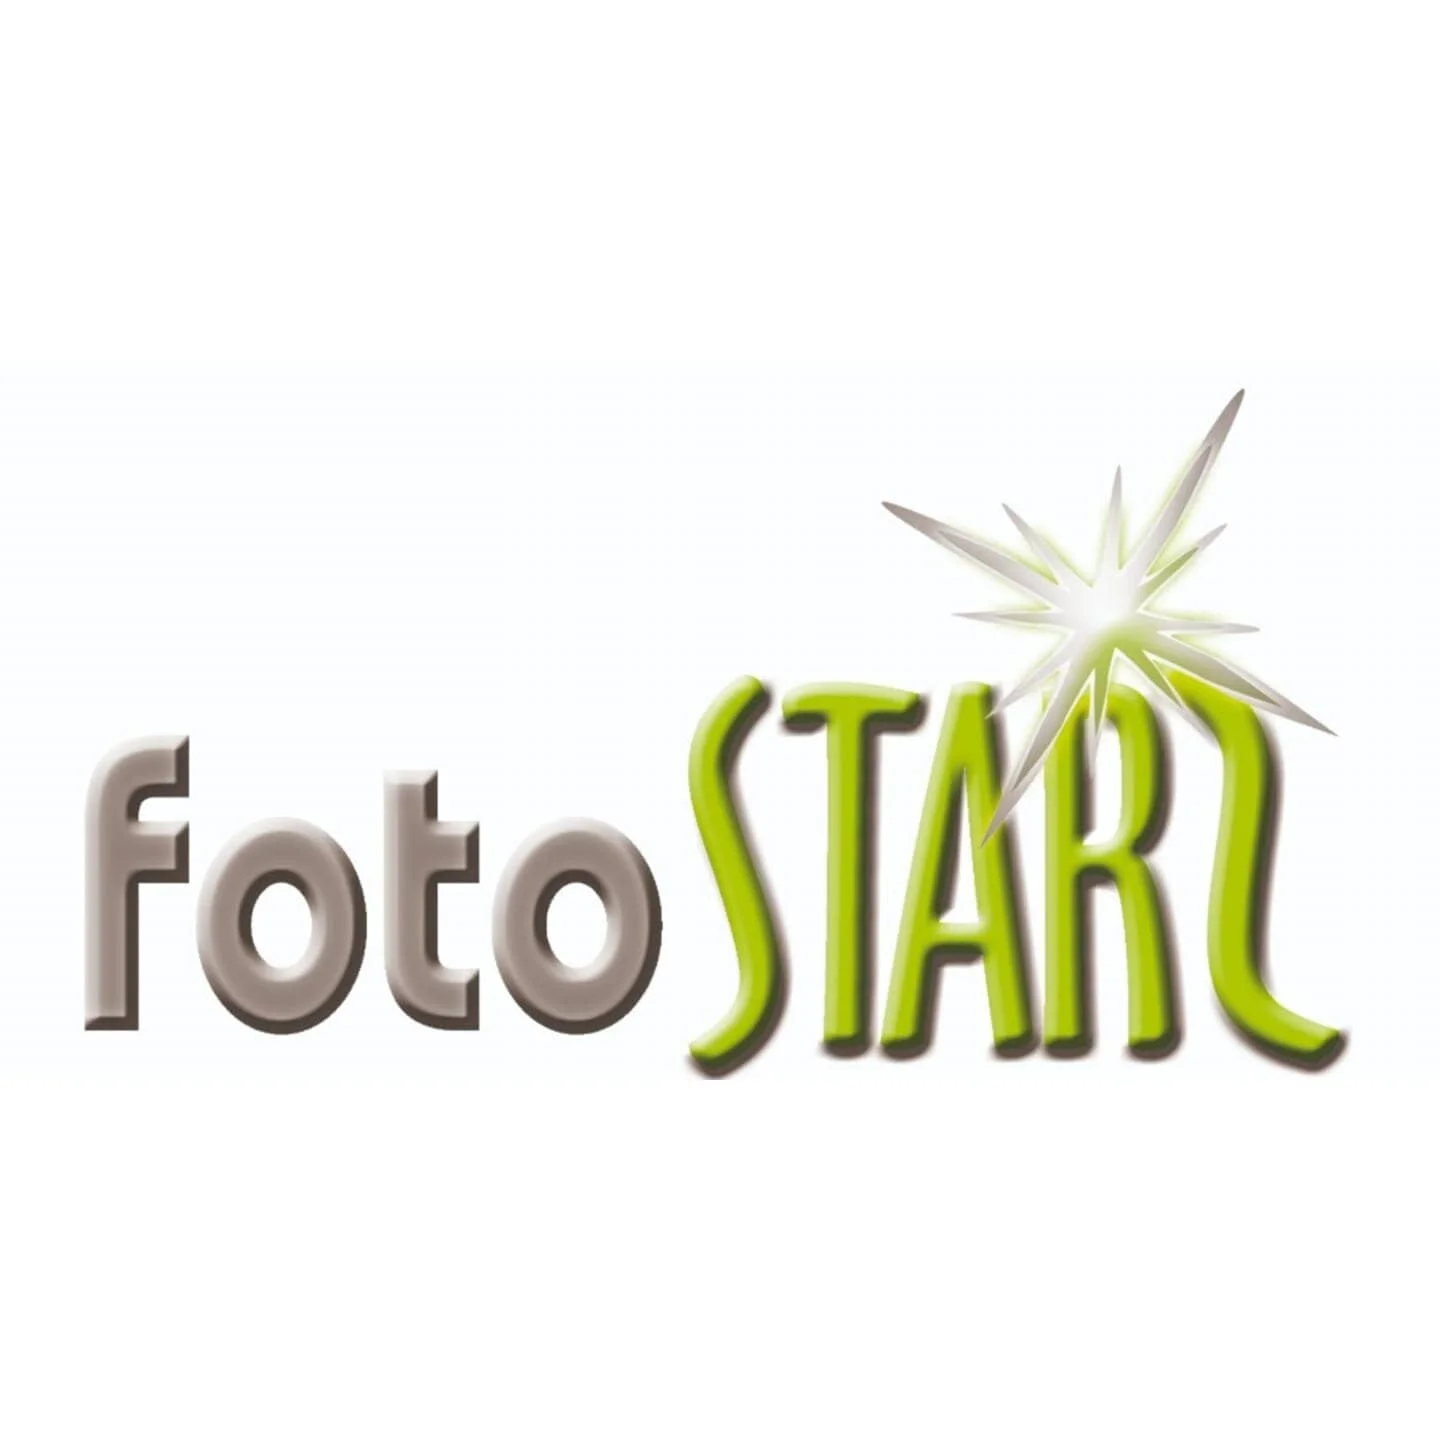 Foto Stars - Estudio Fotográfico-9526